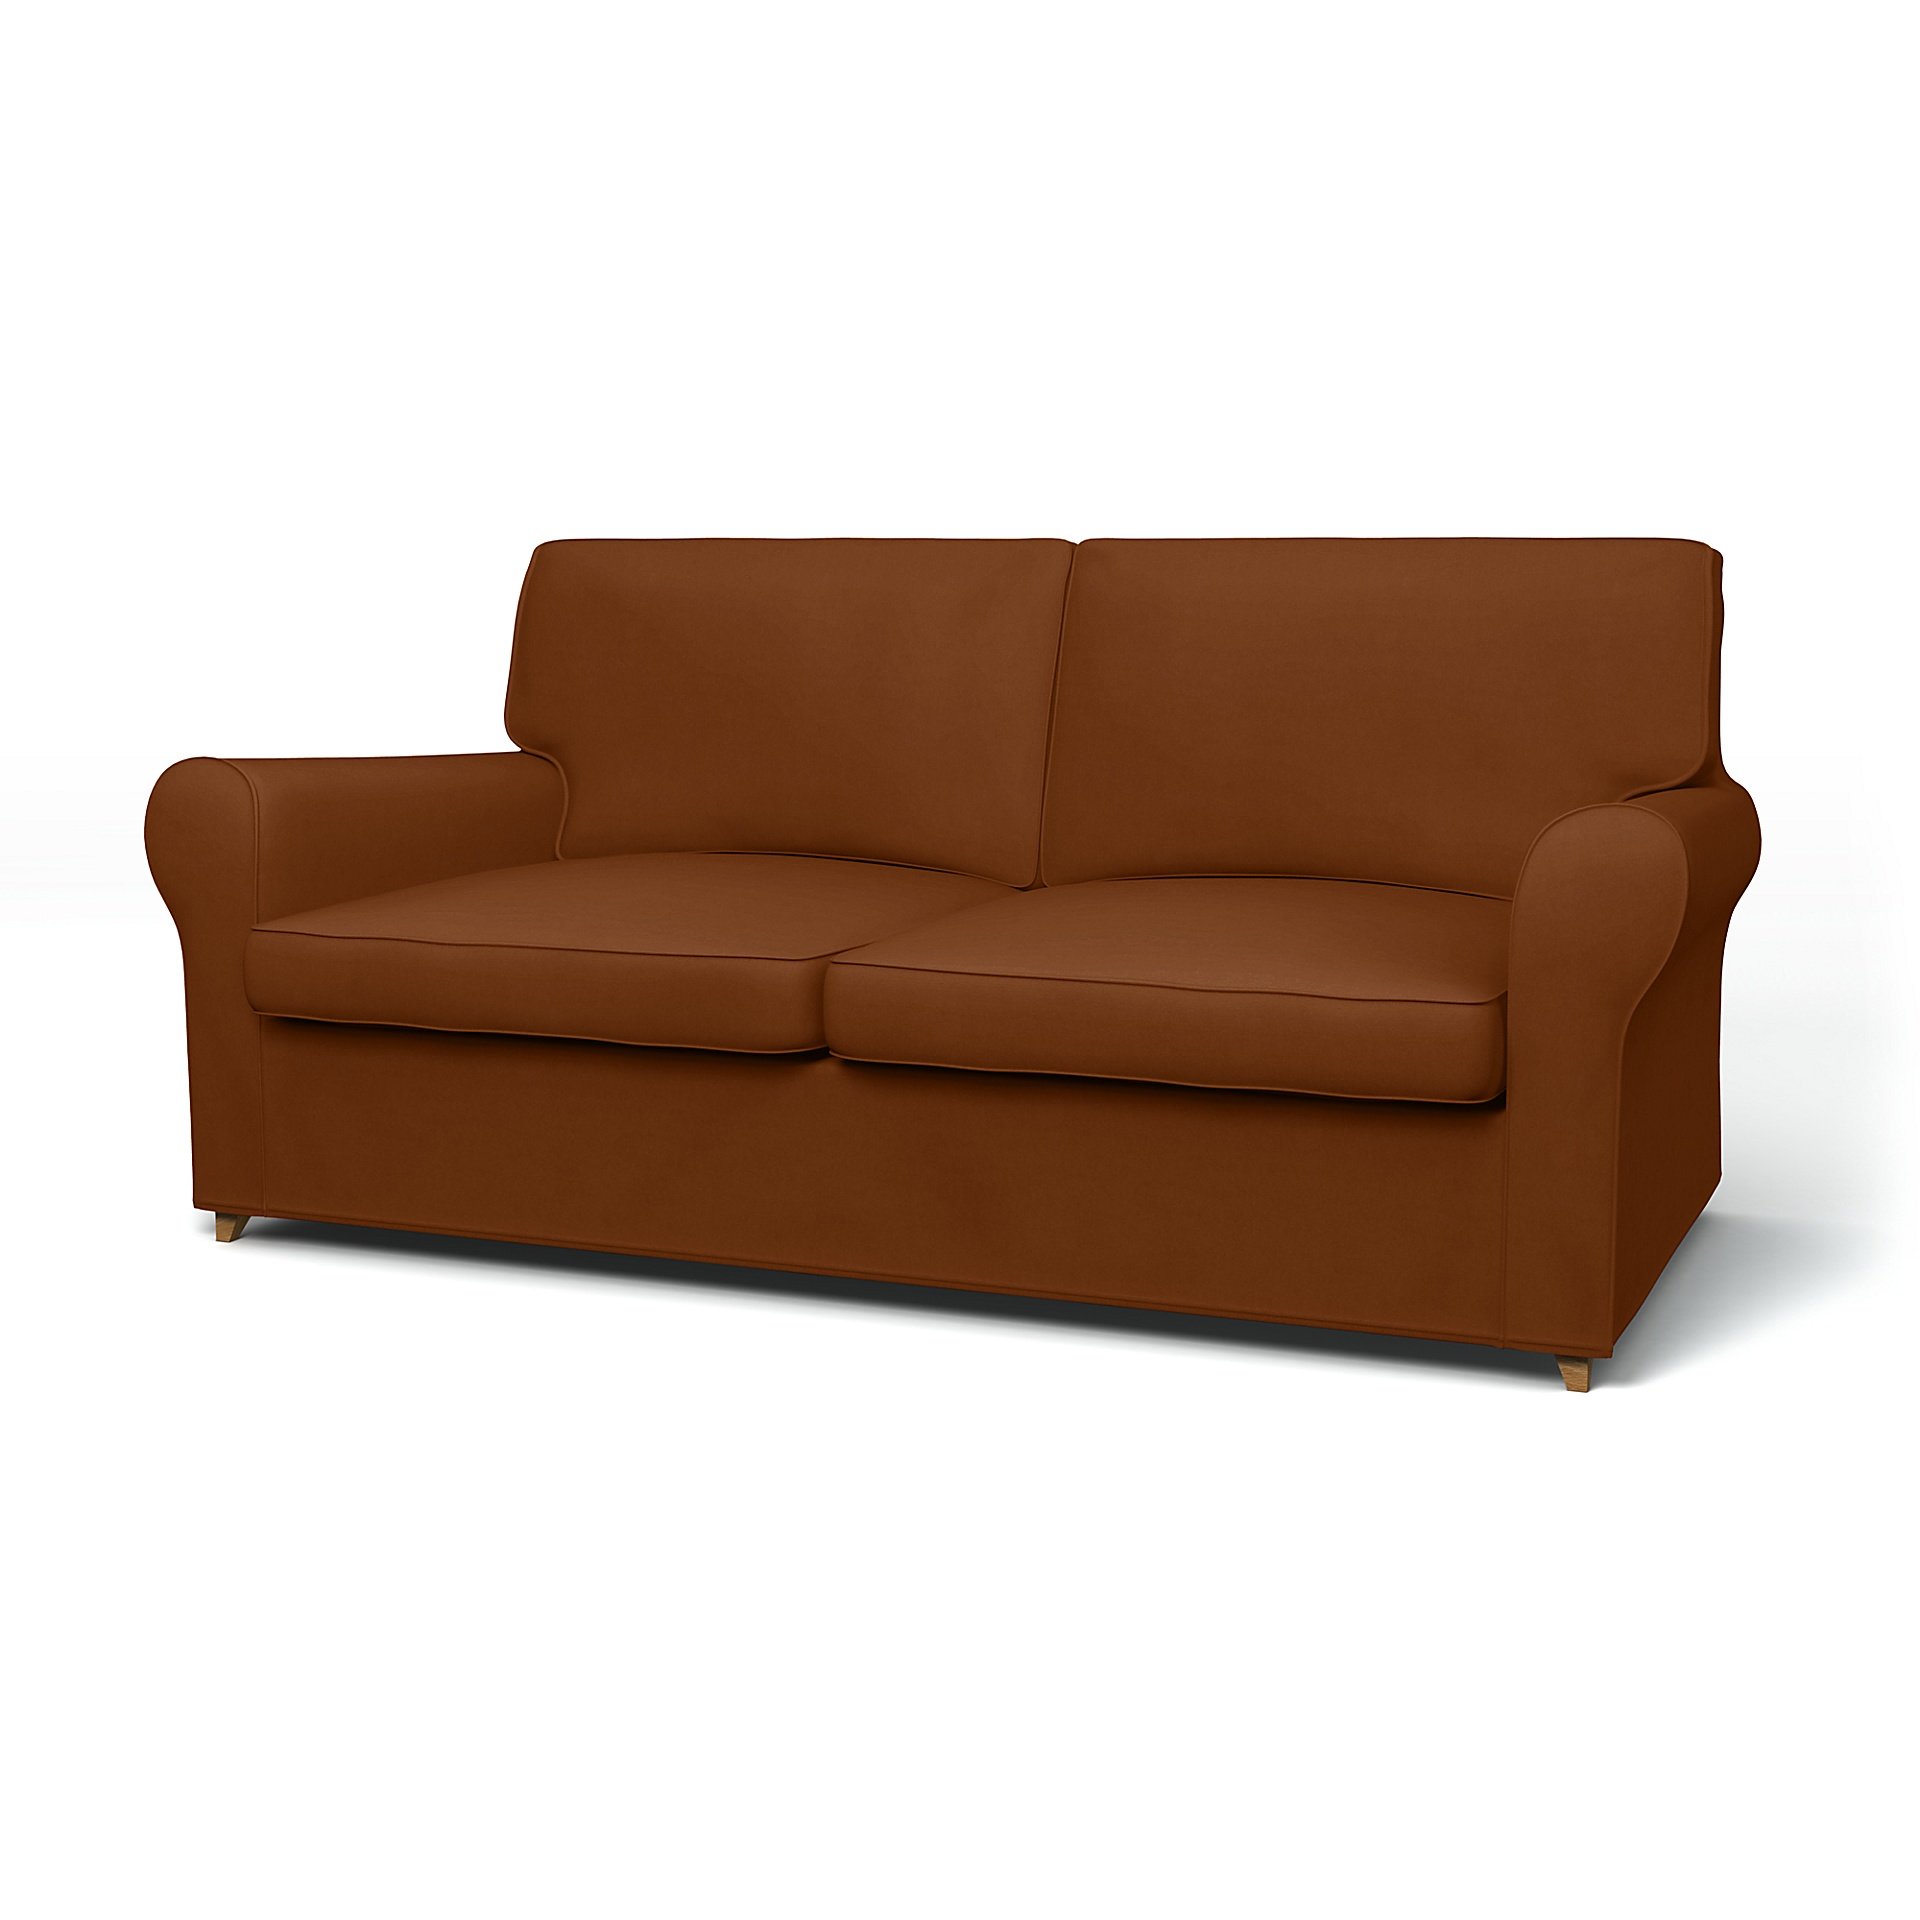 IKEA - Angby Sofa Bed Cover, Cinnamon, Velvet - Bemz